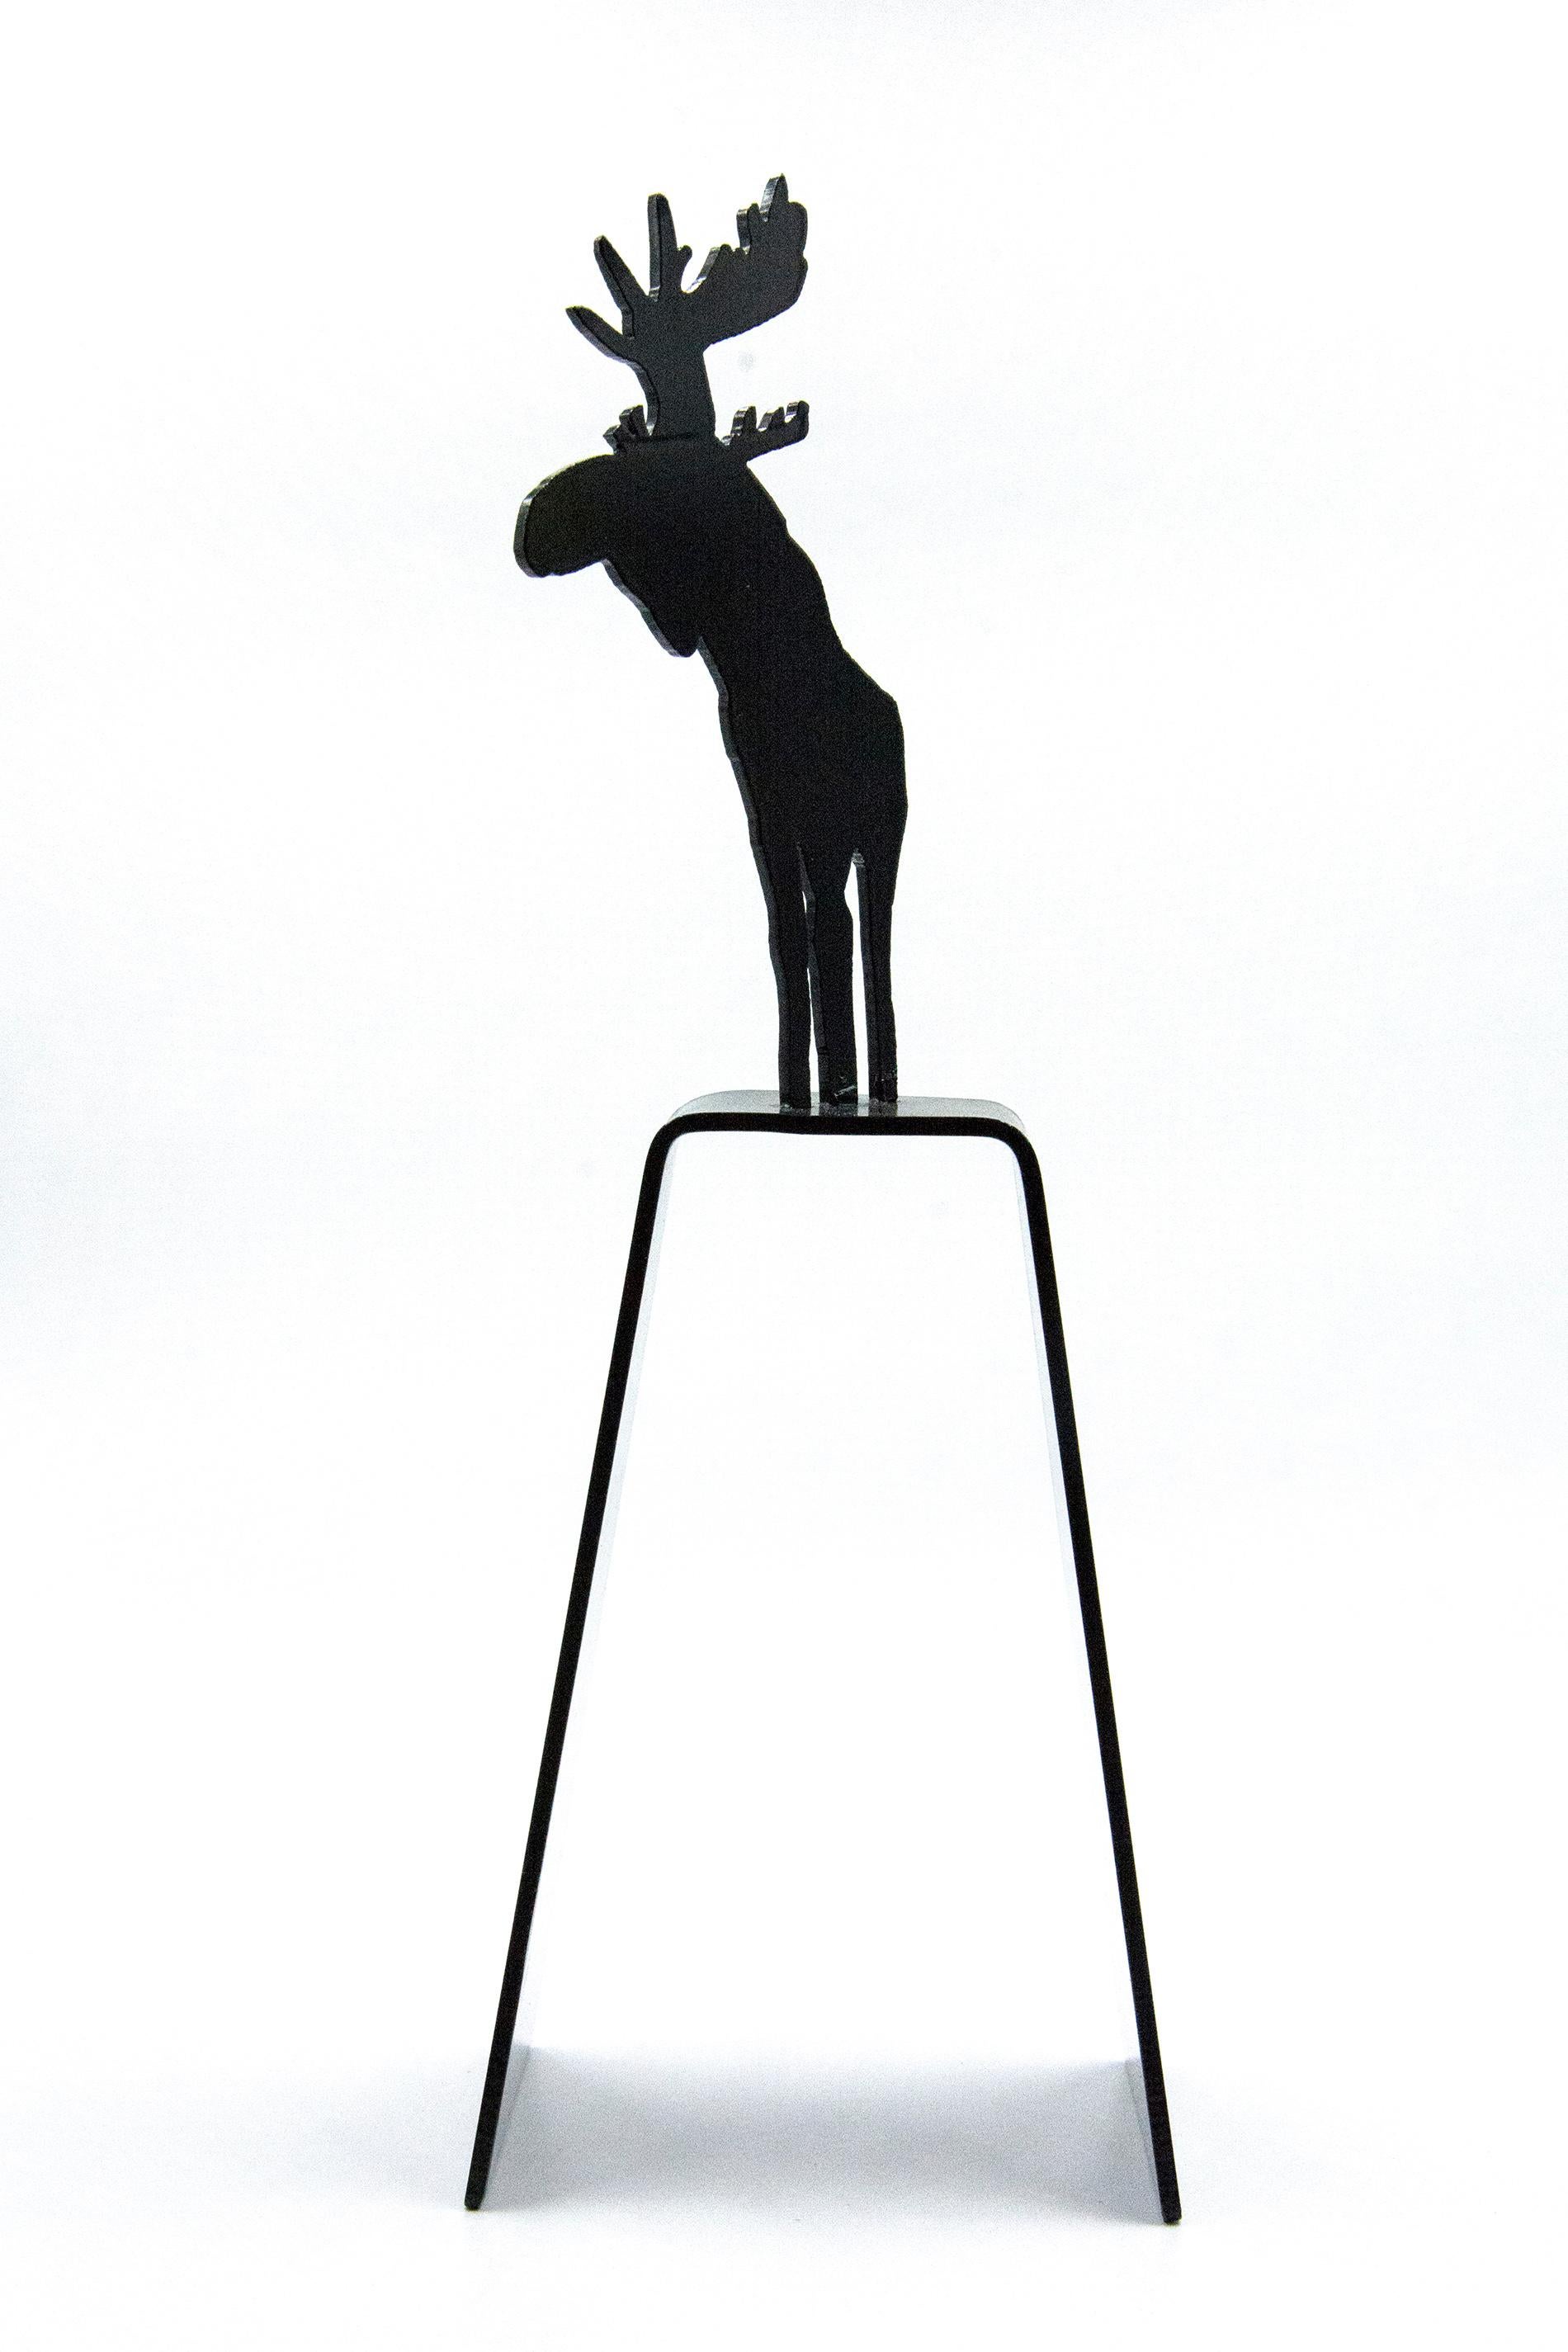 Mooseconstrue 1/4 - kleine, verspielte, kanadische Pop-Art-Skulptur aus Aluminium – Sculpture von Charles Pachter